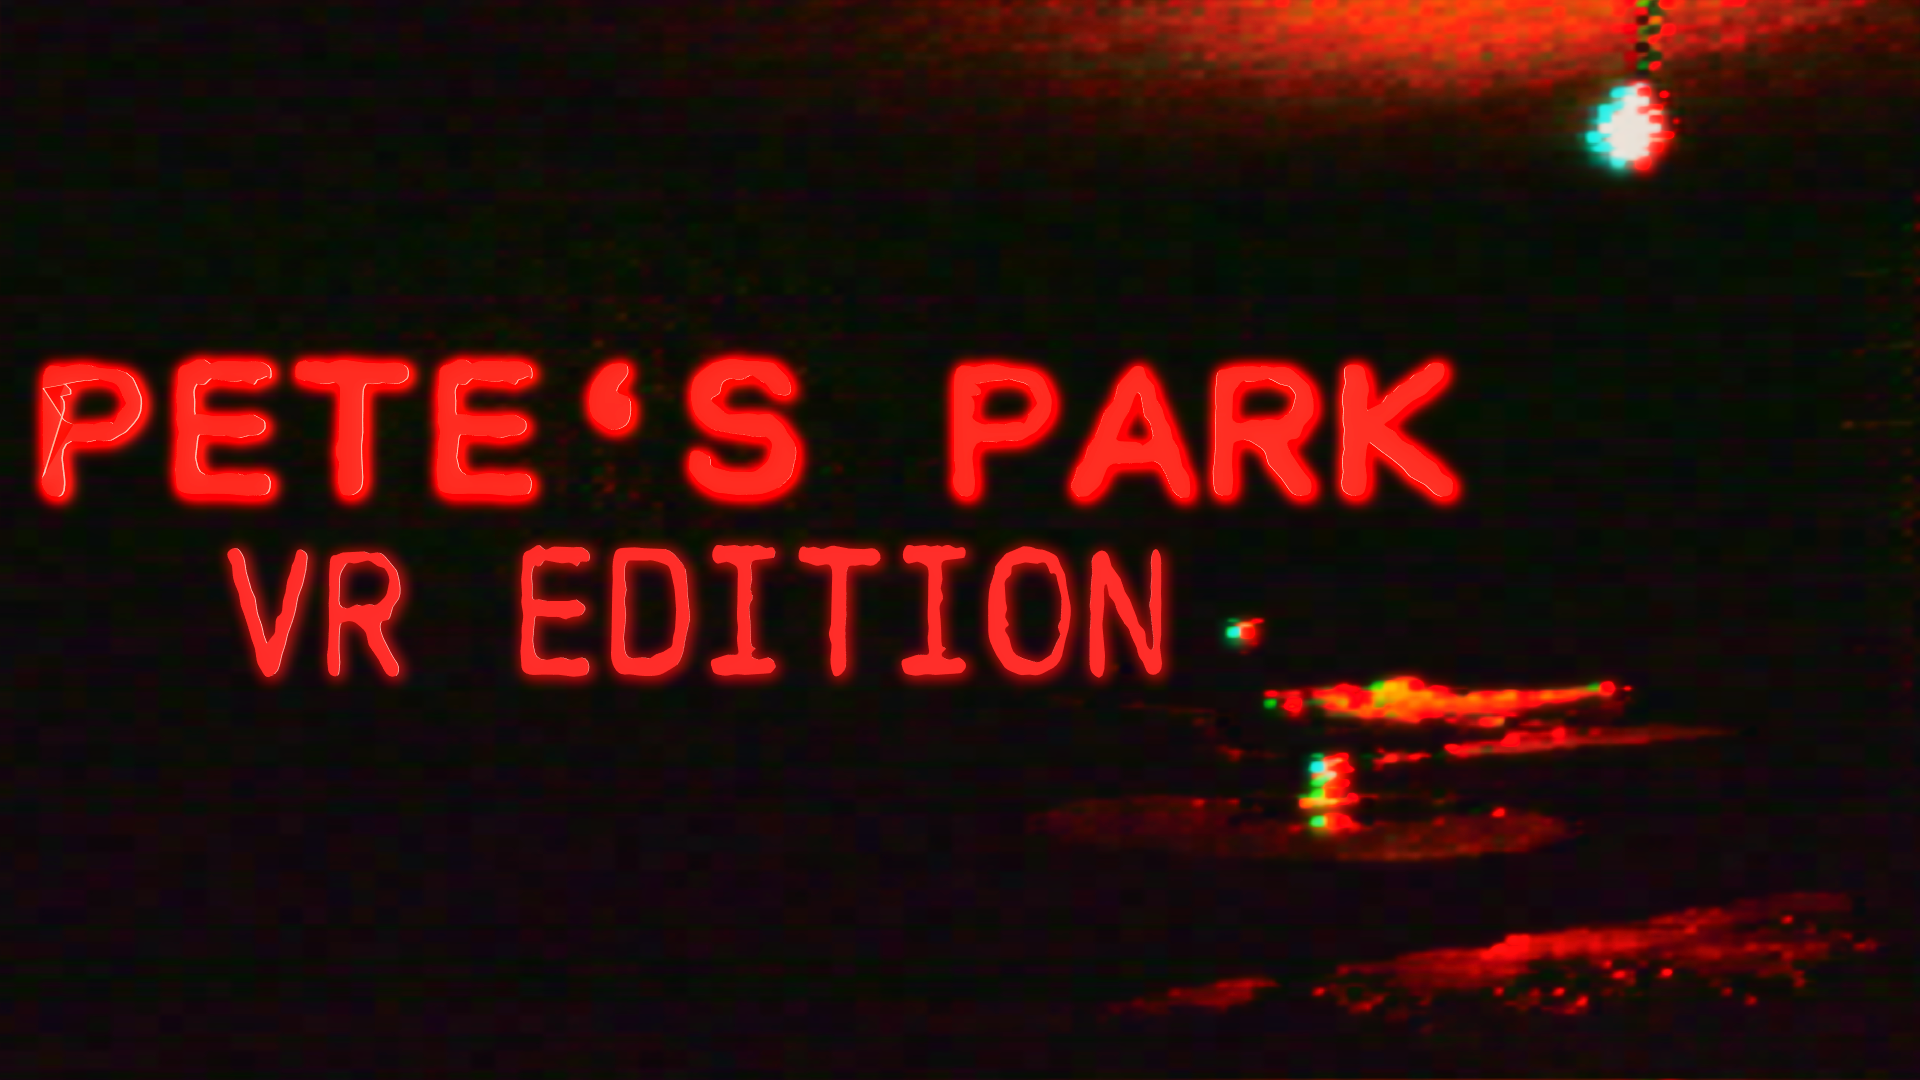 Pete's Park VR